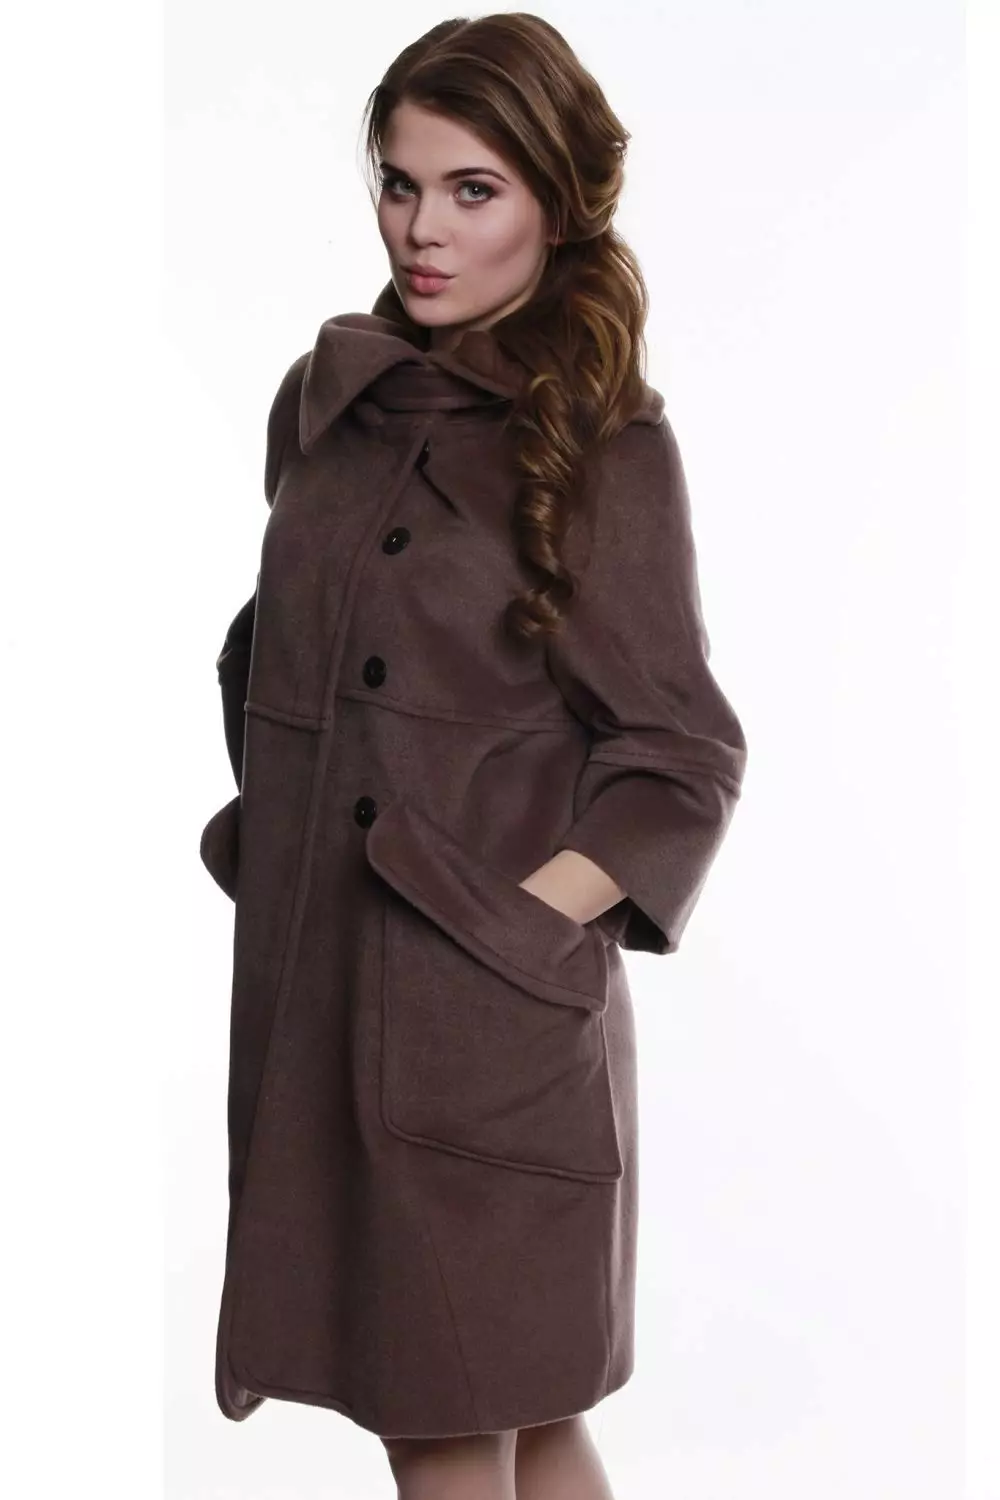 Female frakke Spring 2021 (356 Billeder): Fra russiske producenter, modeller, stilarter og stilarter, quiltet, kort, dæmpning, læder 623_213